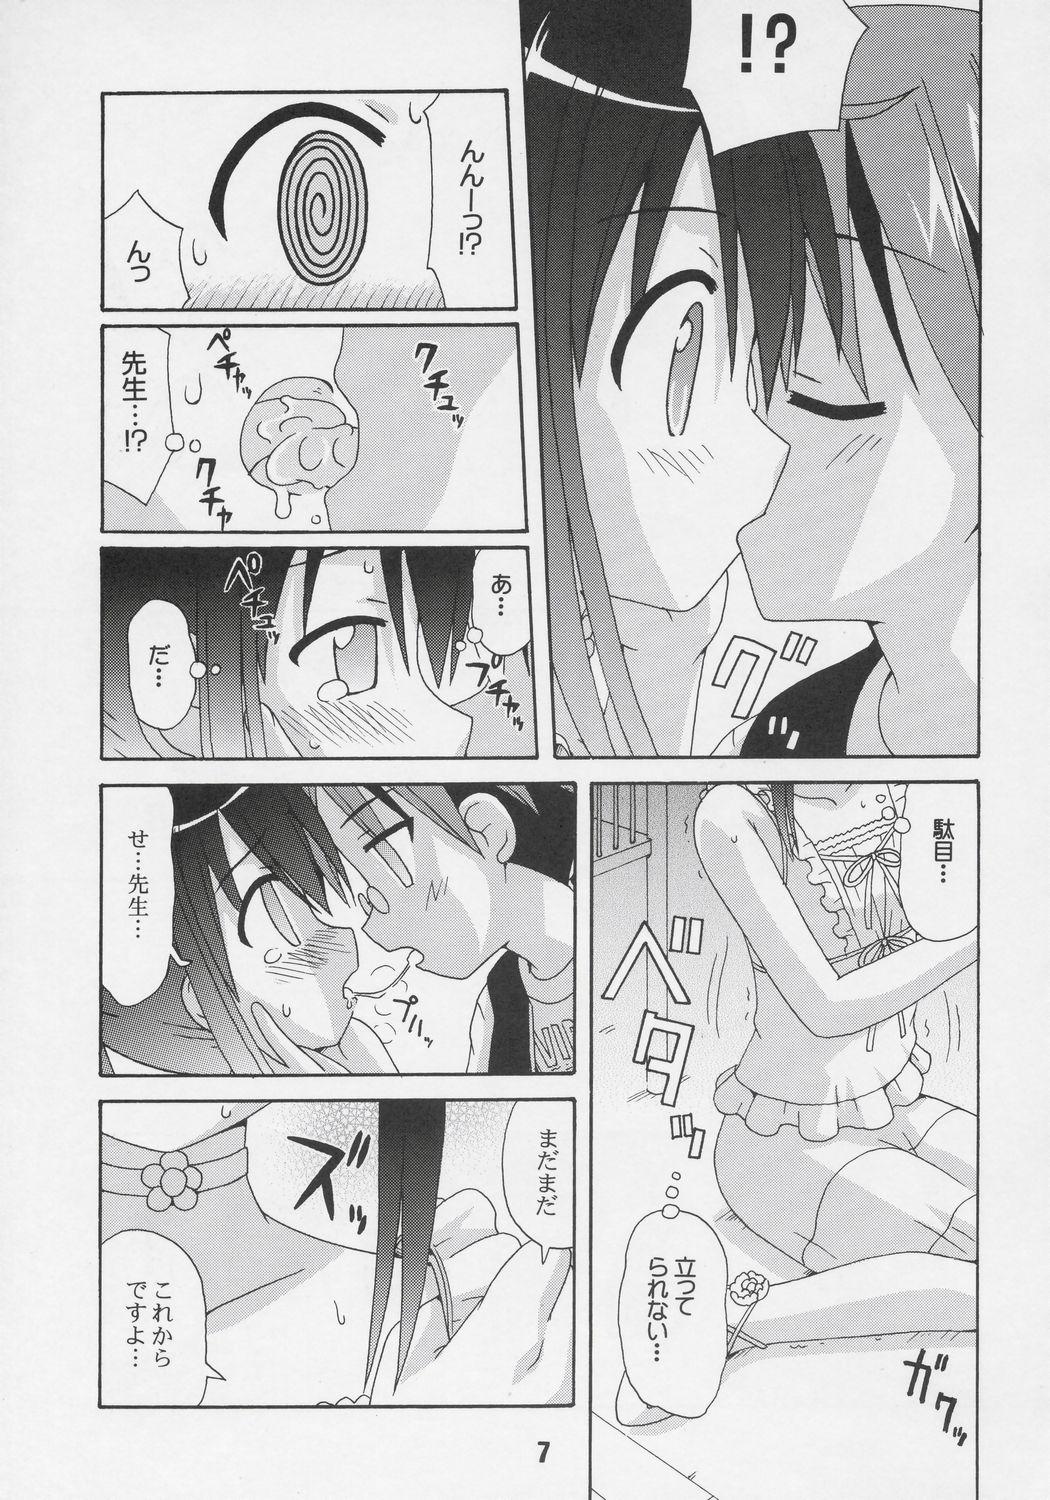 Sucking Cocks Negina. 6 - Mahou sensei negima Big Ass - Page 6